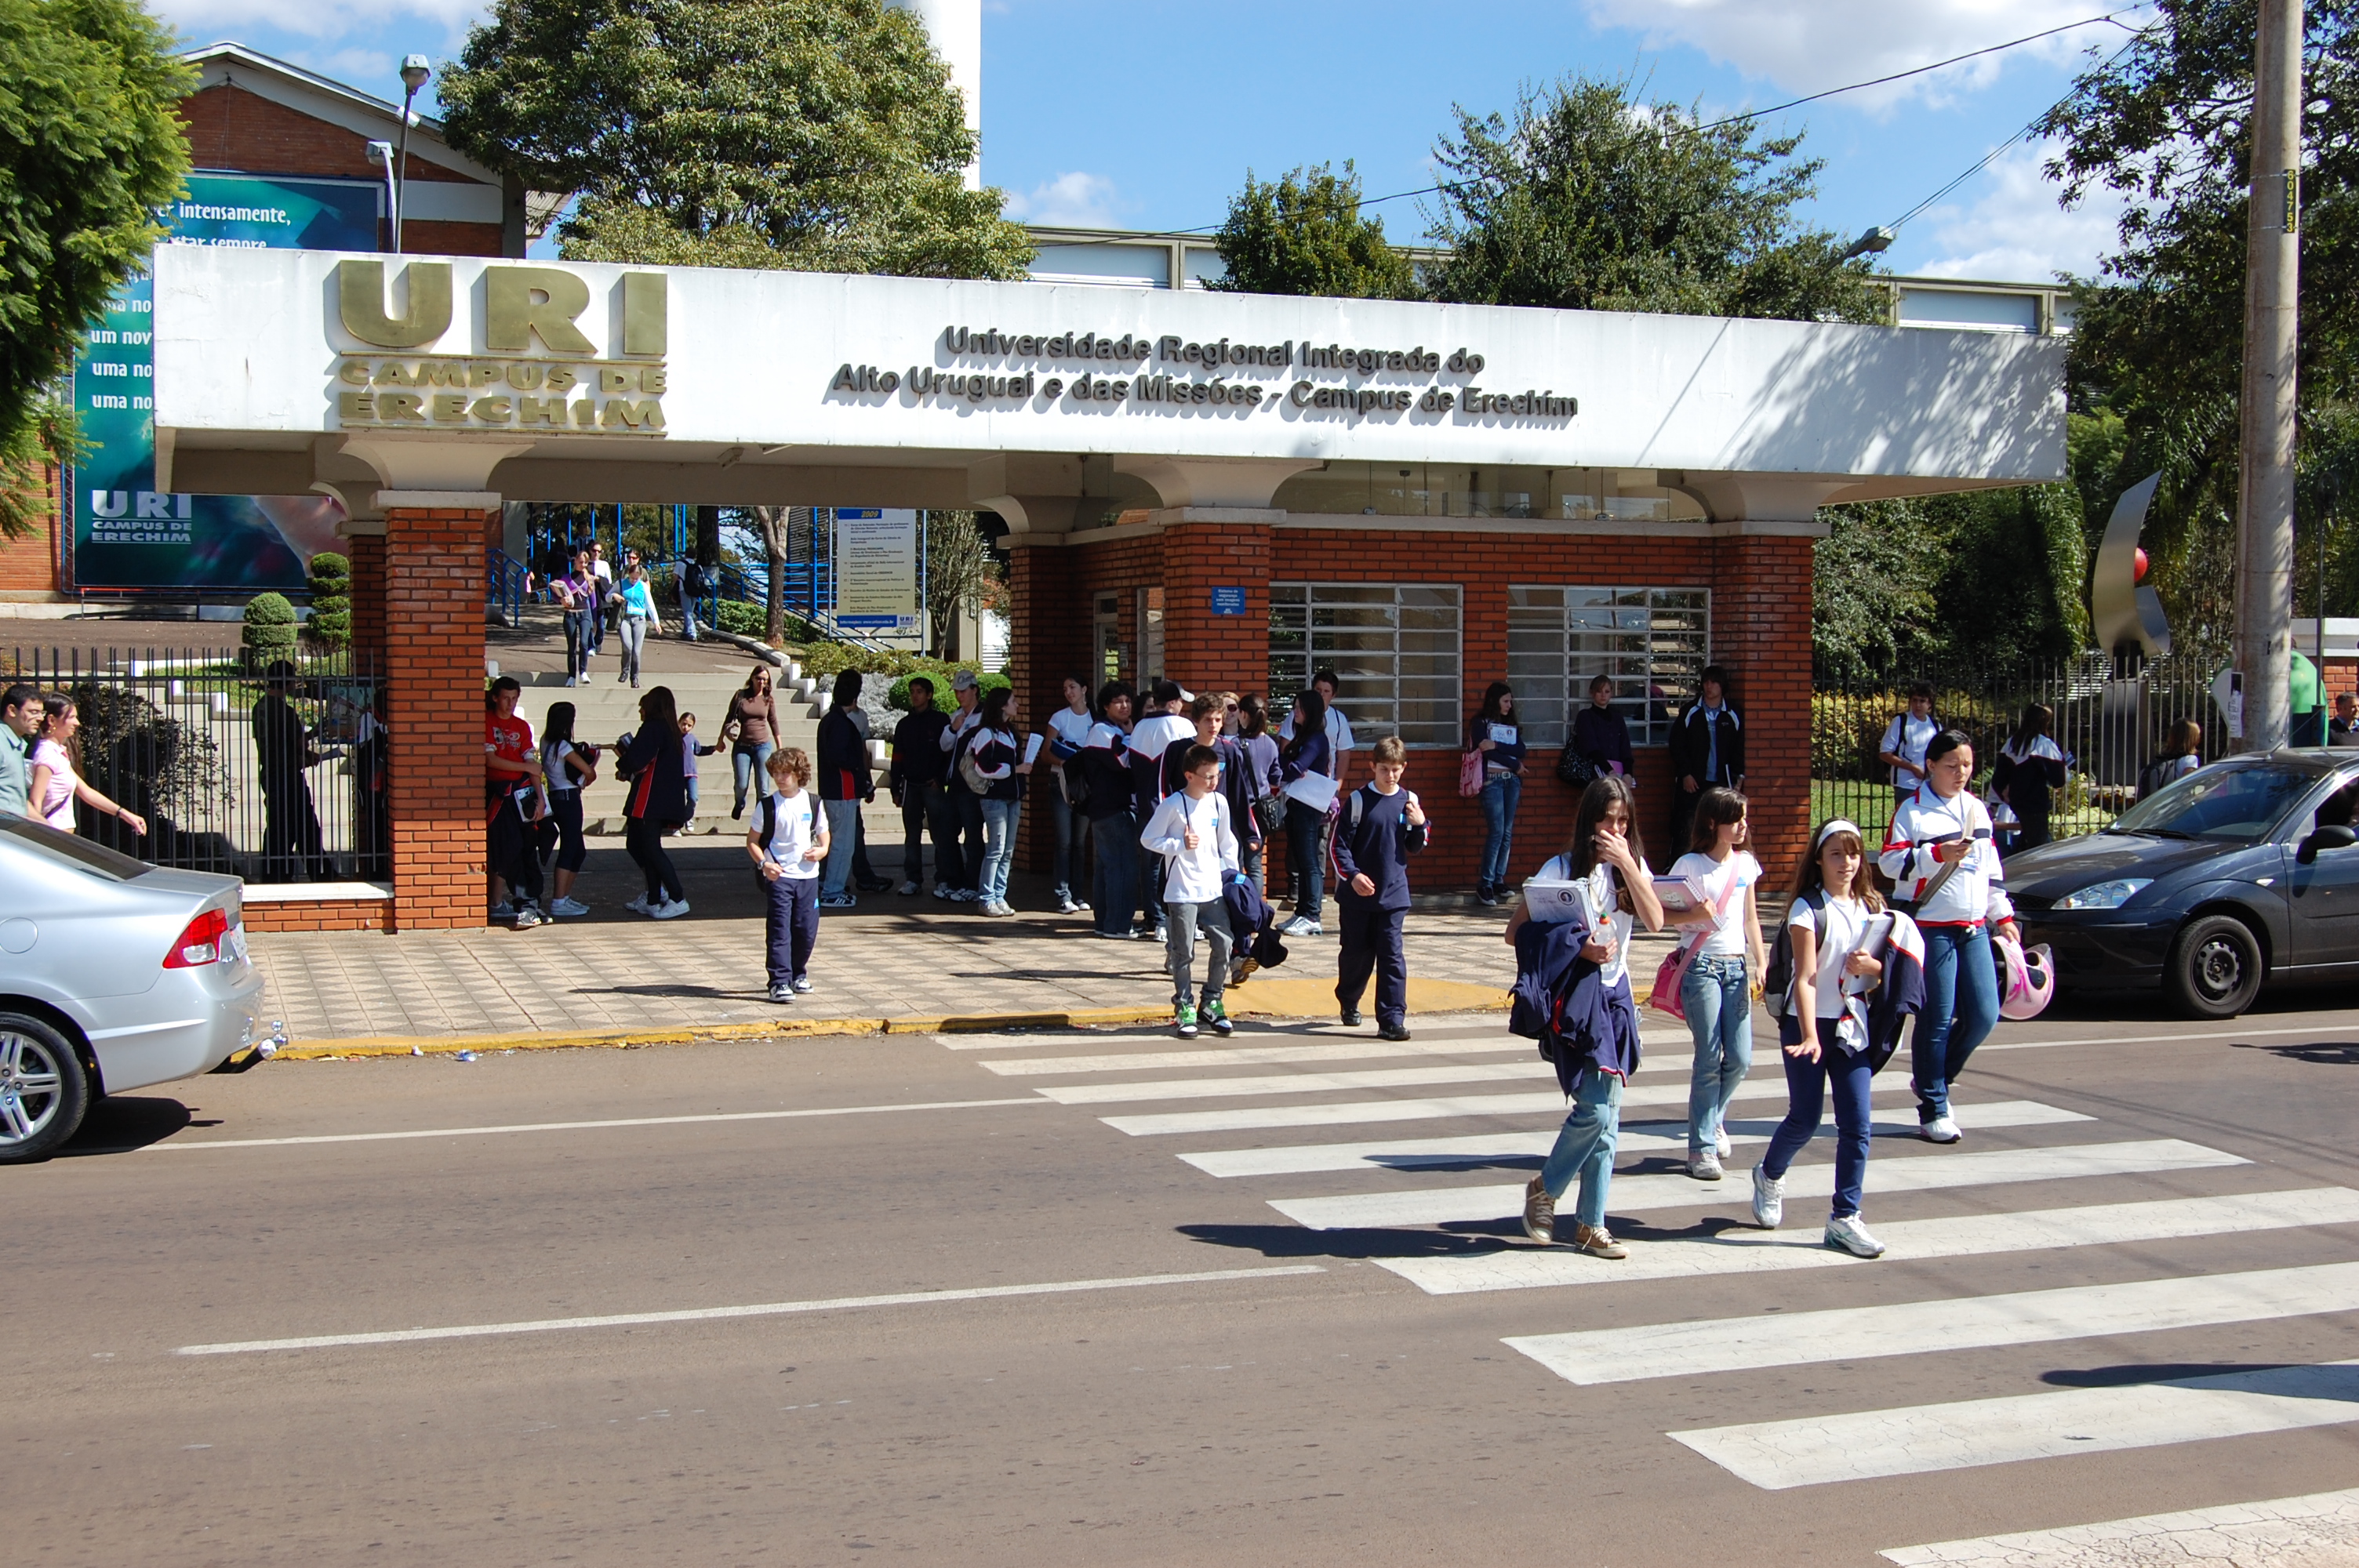 Universidade Regional Integrada do Alto Uruguai e das Missões (URI)